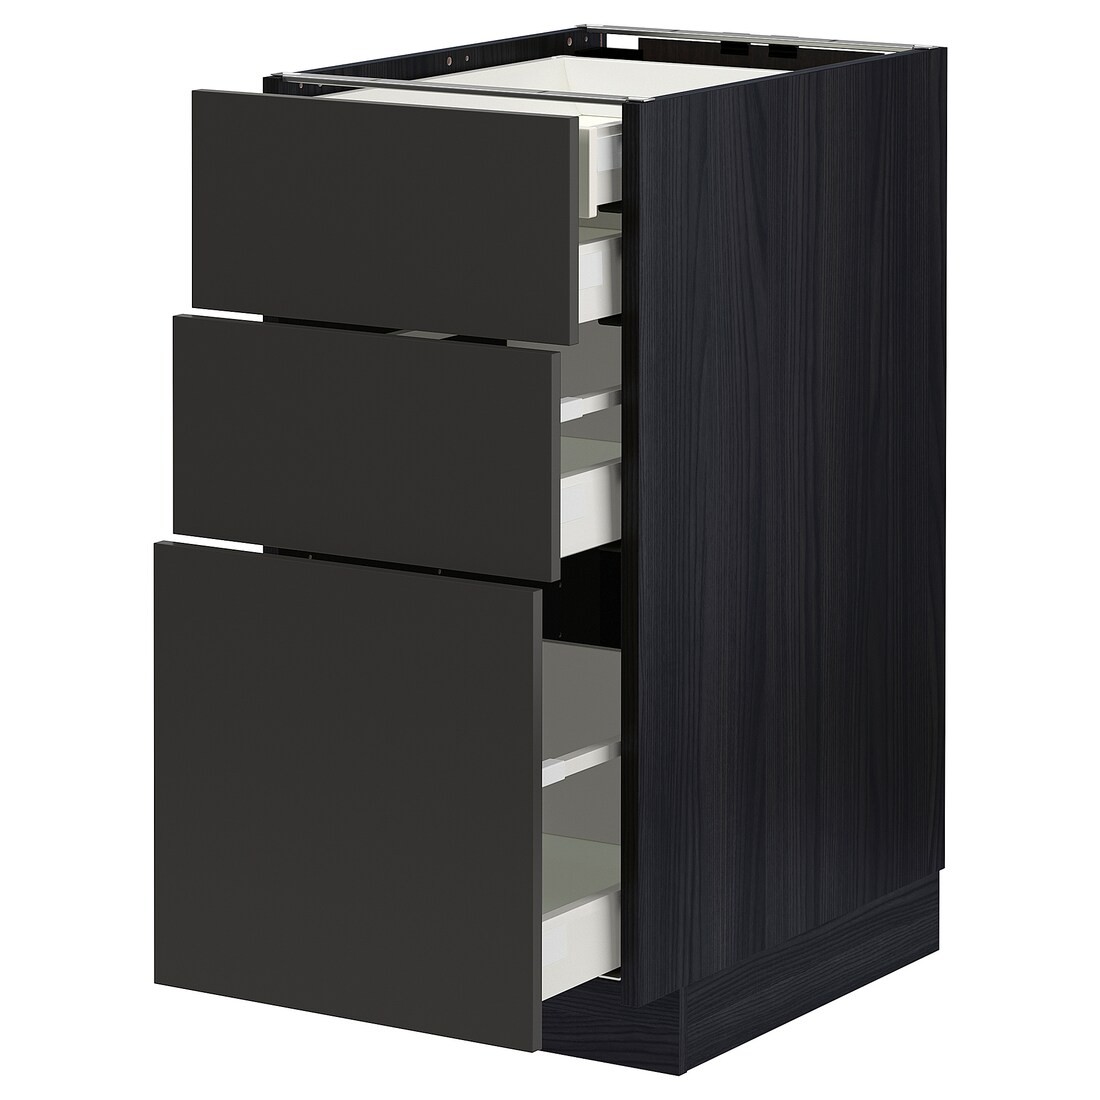 IKEA METOD МЕТОД / MAXIMERA МАКСИМЕРА Напольный шкаф с ящиками, черный / Nickebo матовый антрацит, 40x60 см 69497998 | 694.979.98